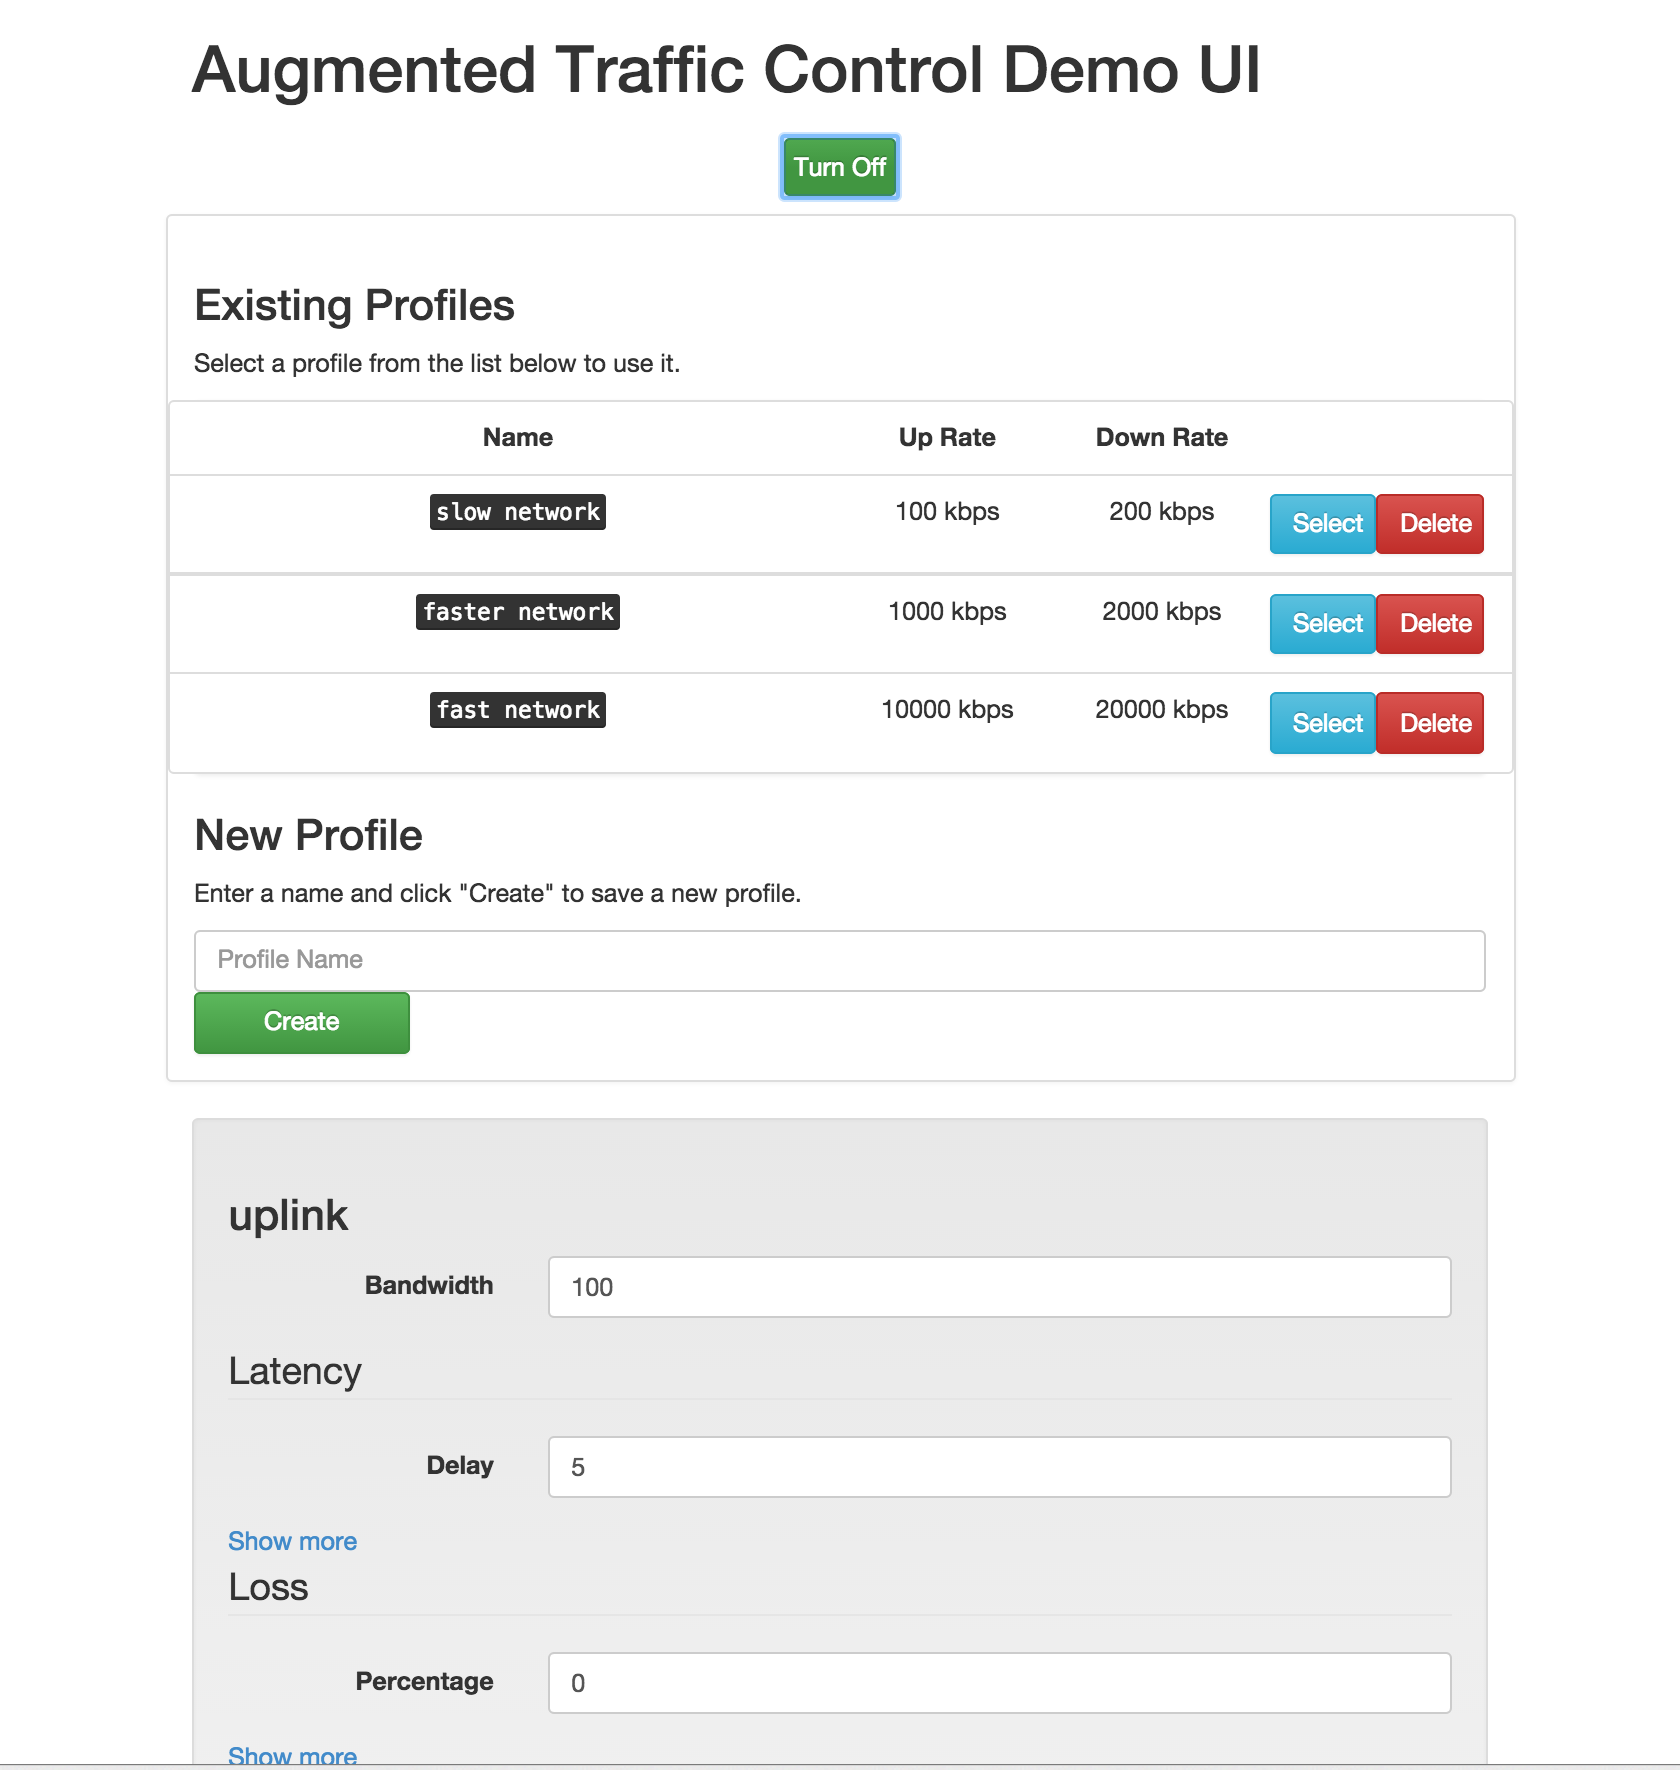 Facebook's Augmented Traffic Control UI